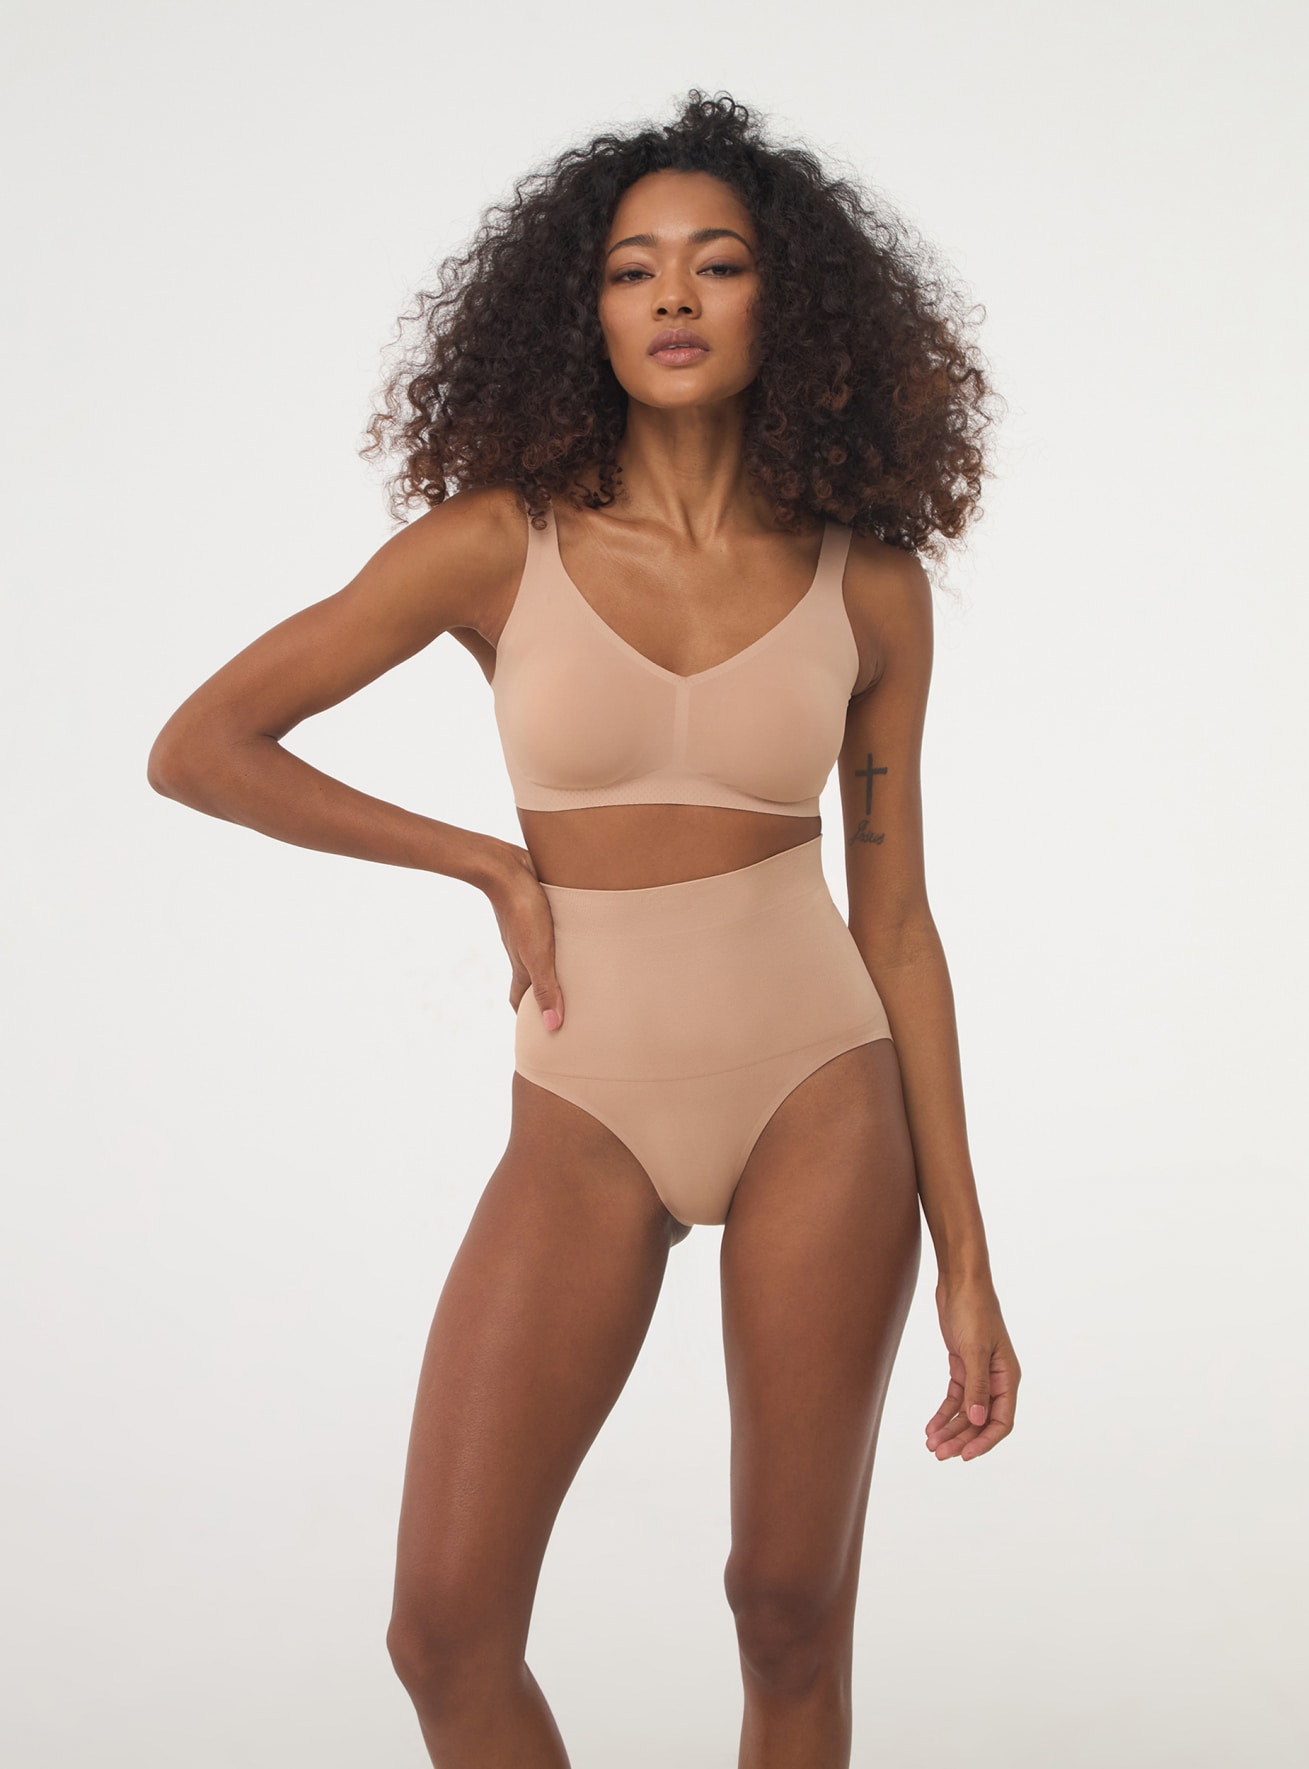 Nude Seamless shapewear briefs - Buy Online